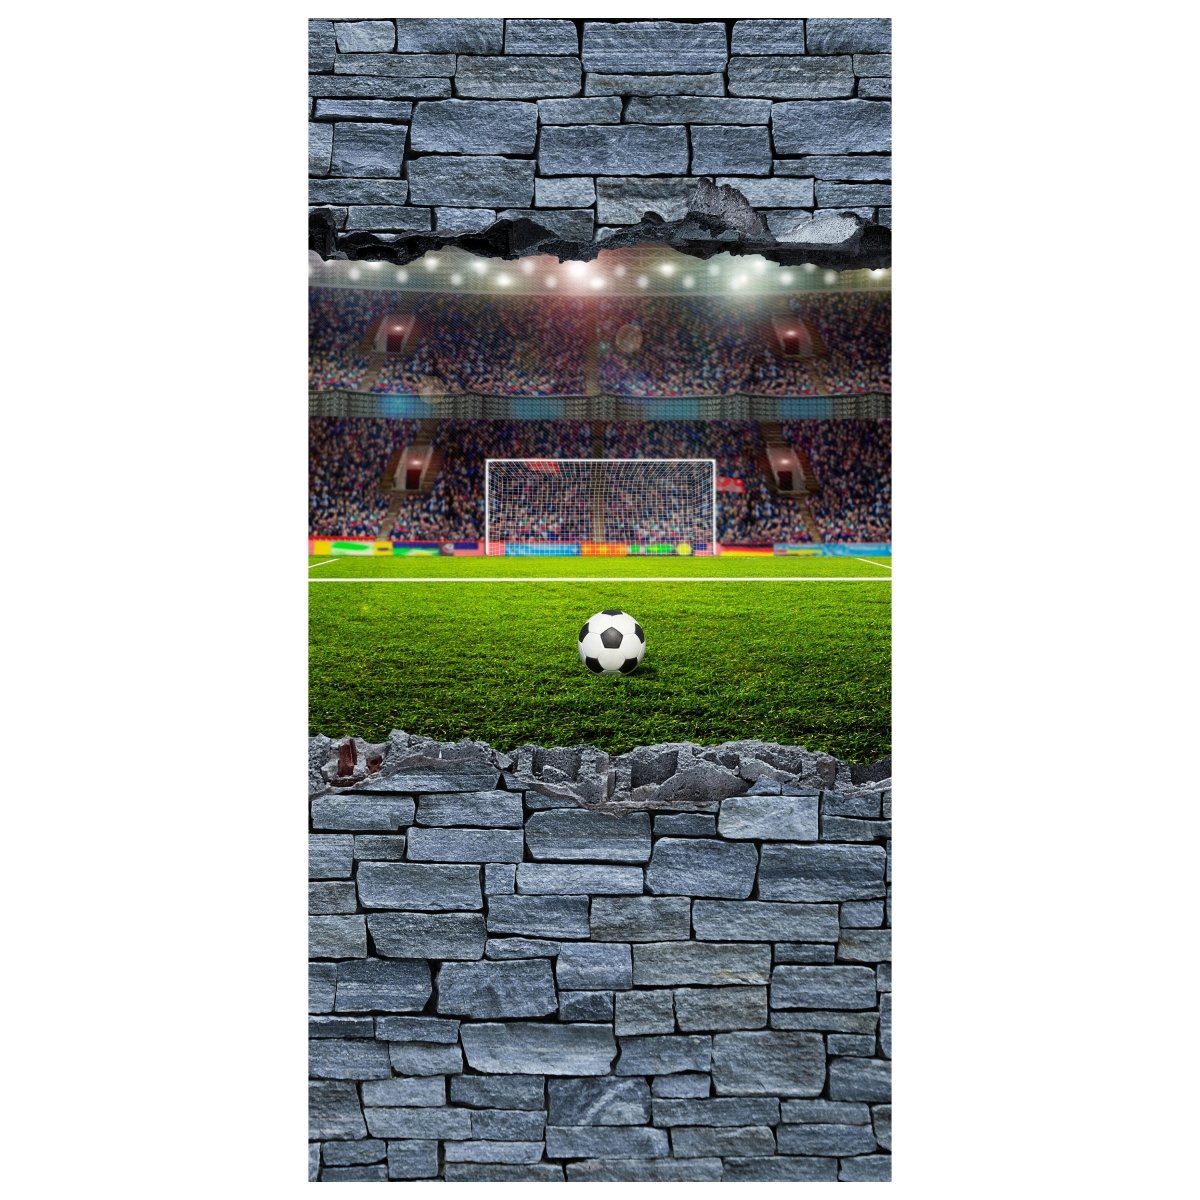 Türtapete 3D Fußballfeld - grobe Steinmauer M0640 - Bild 2